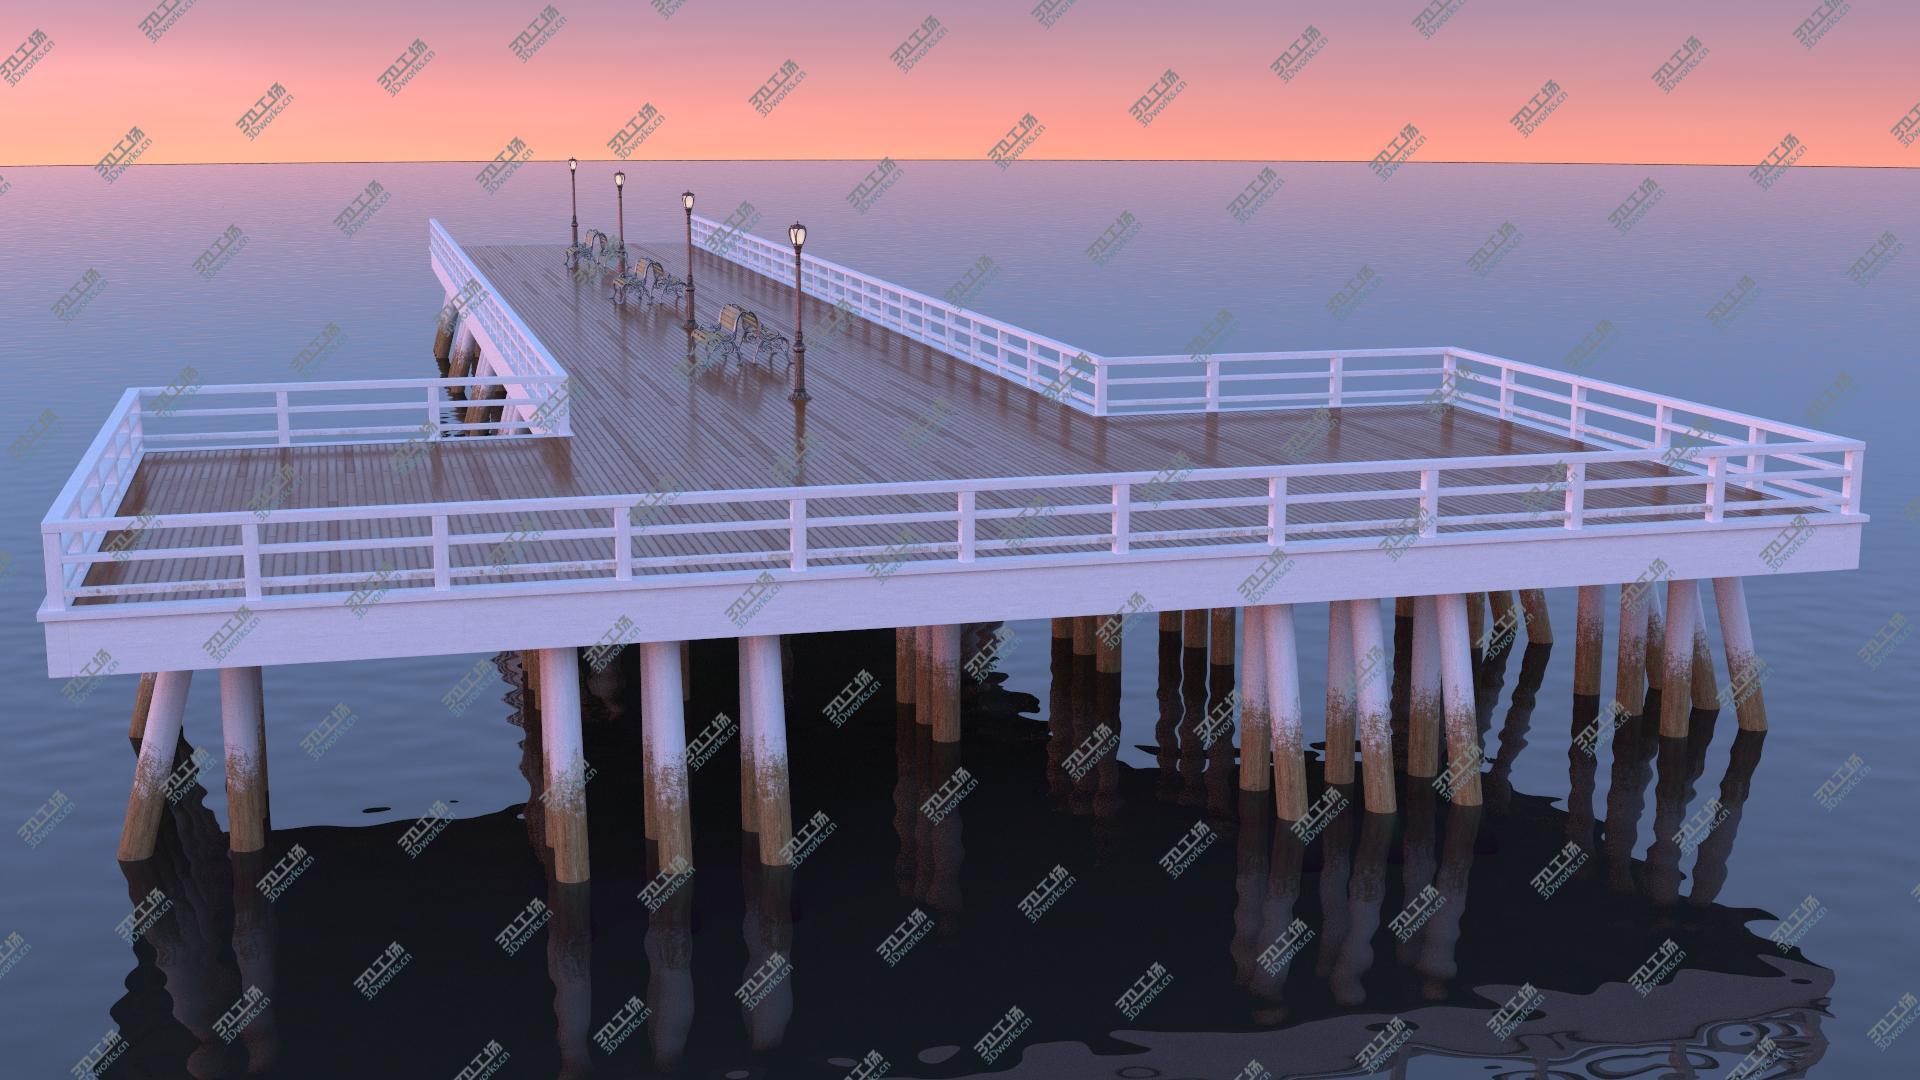 images/goods_img/202104091/Wooden Pier Bridge model/4.jpg